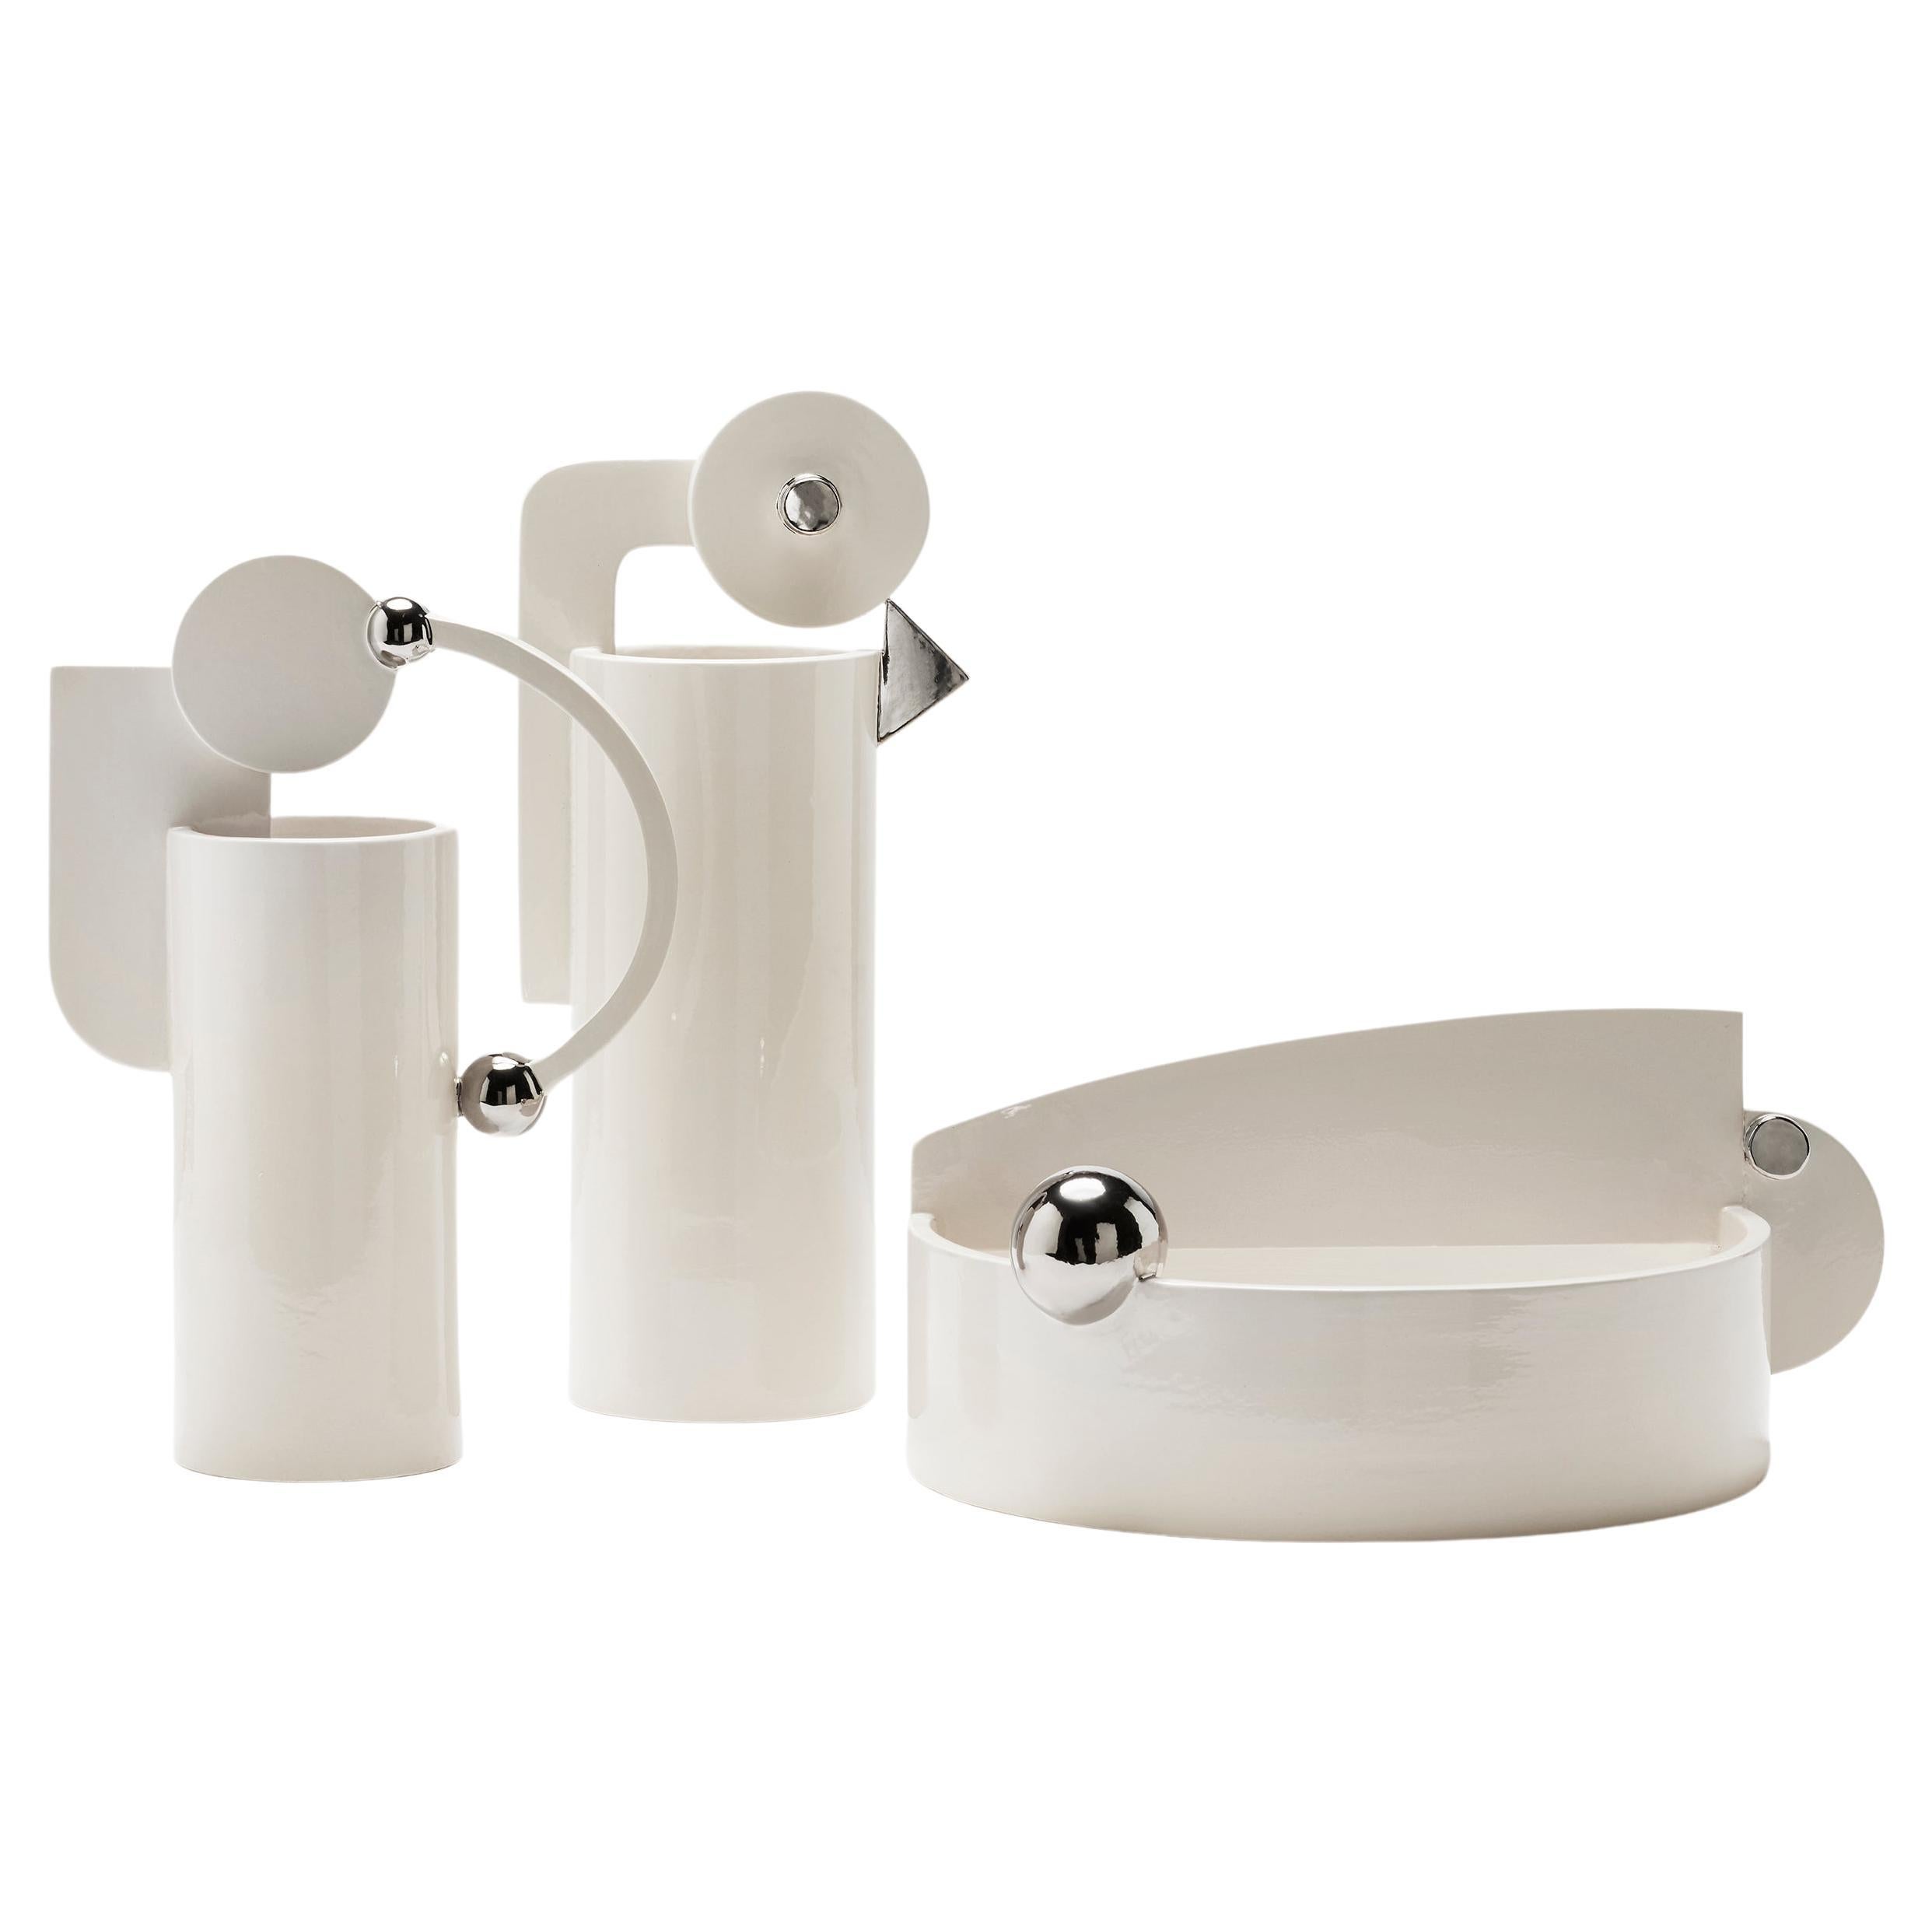 Set von drei Keramikvasen in Weiß und echtem Platin, glänzender moderner Chic Luxury